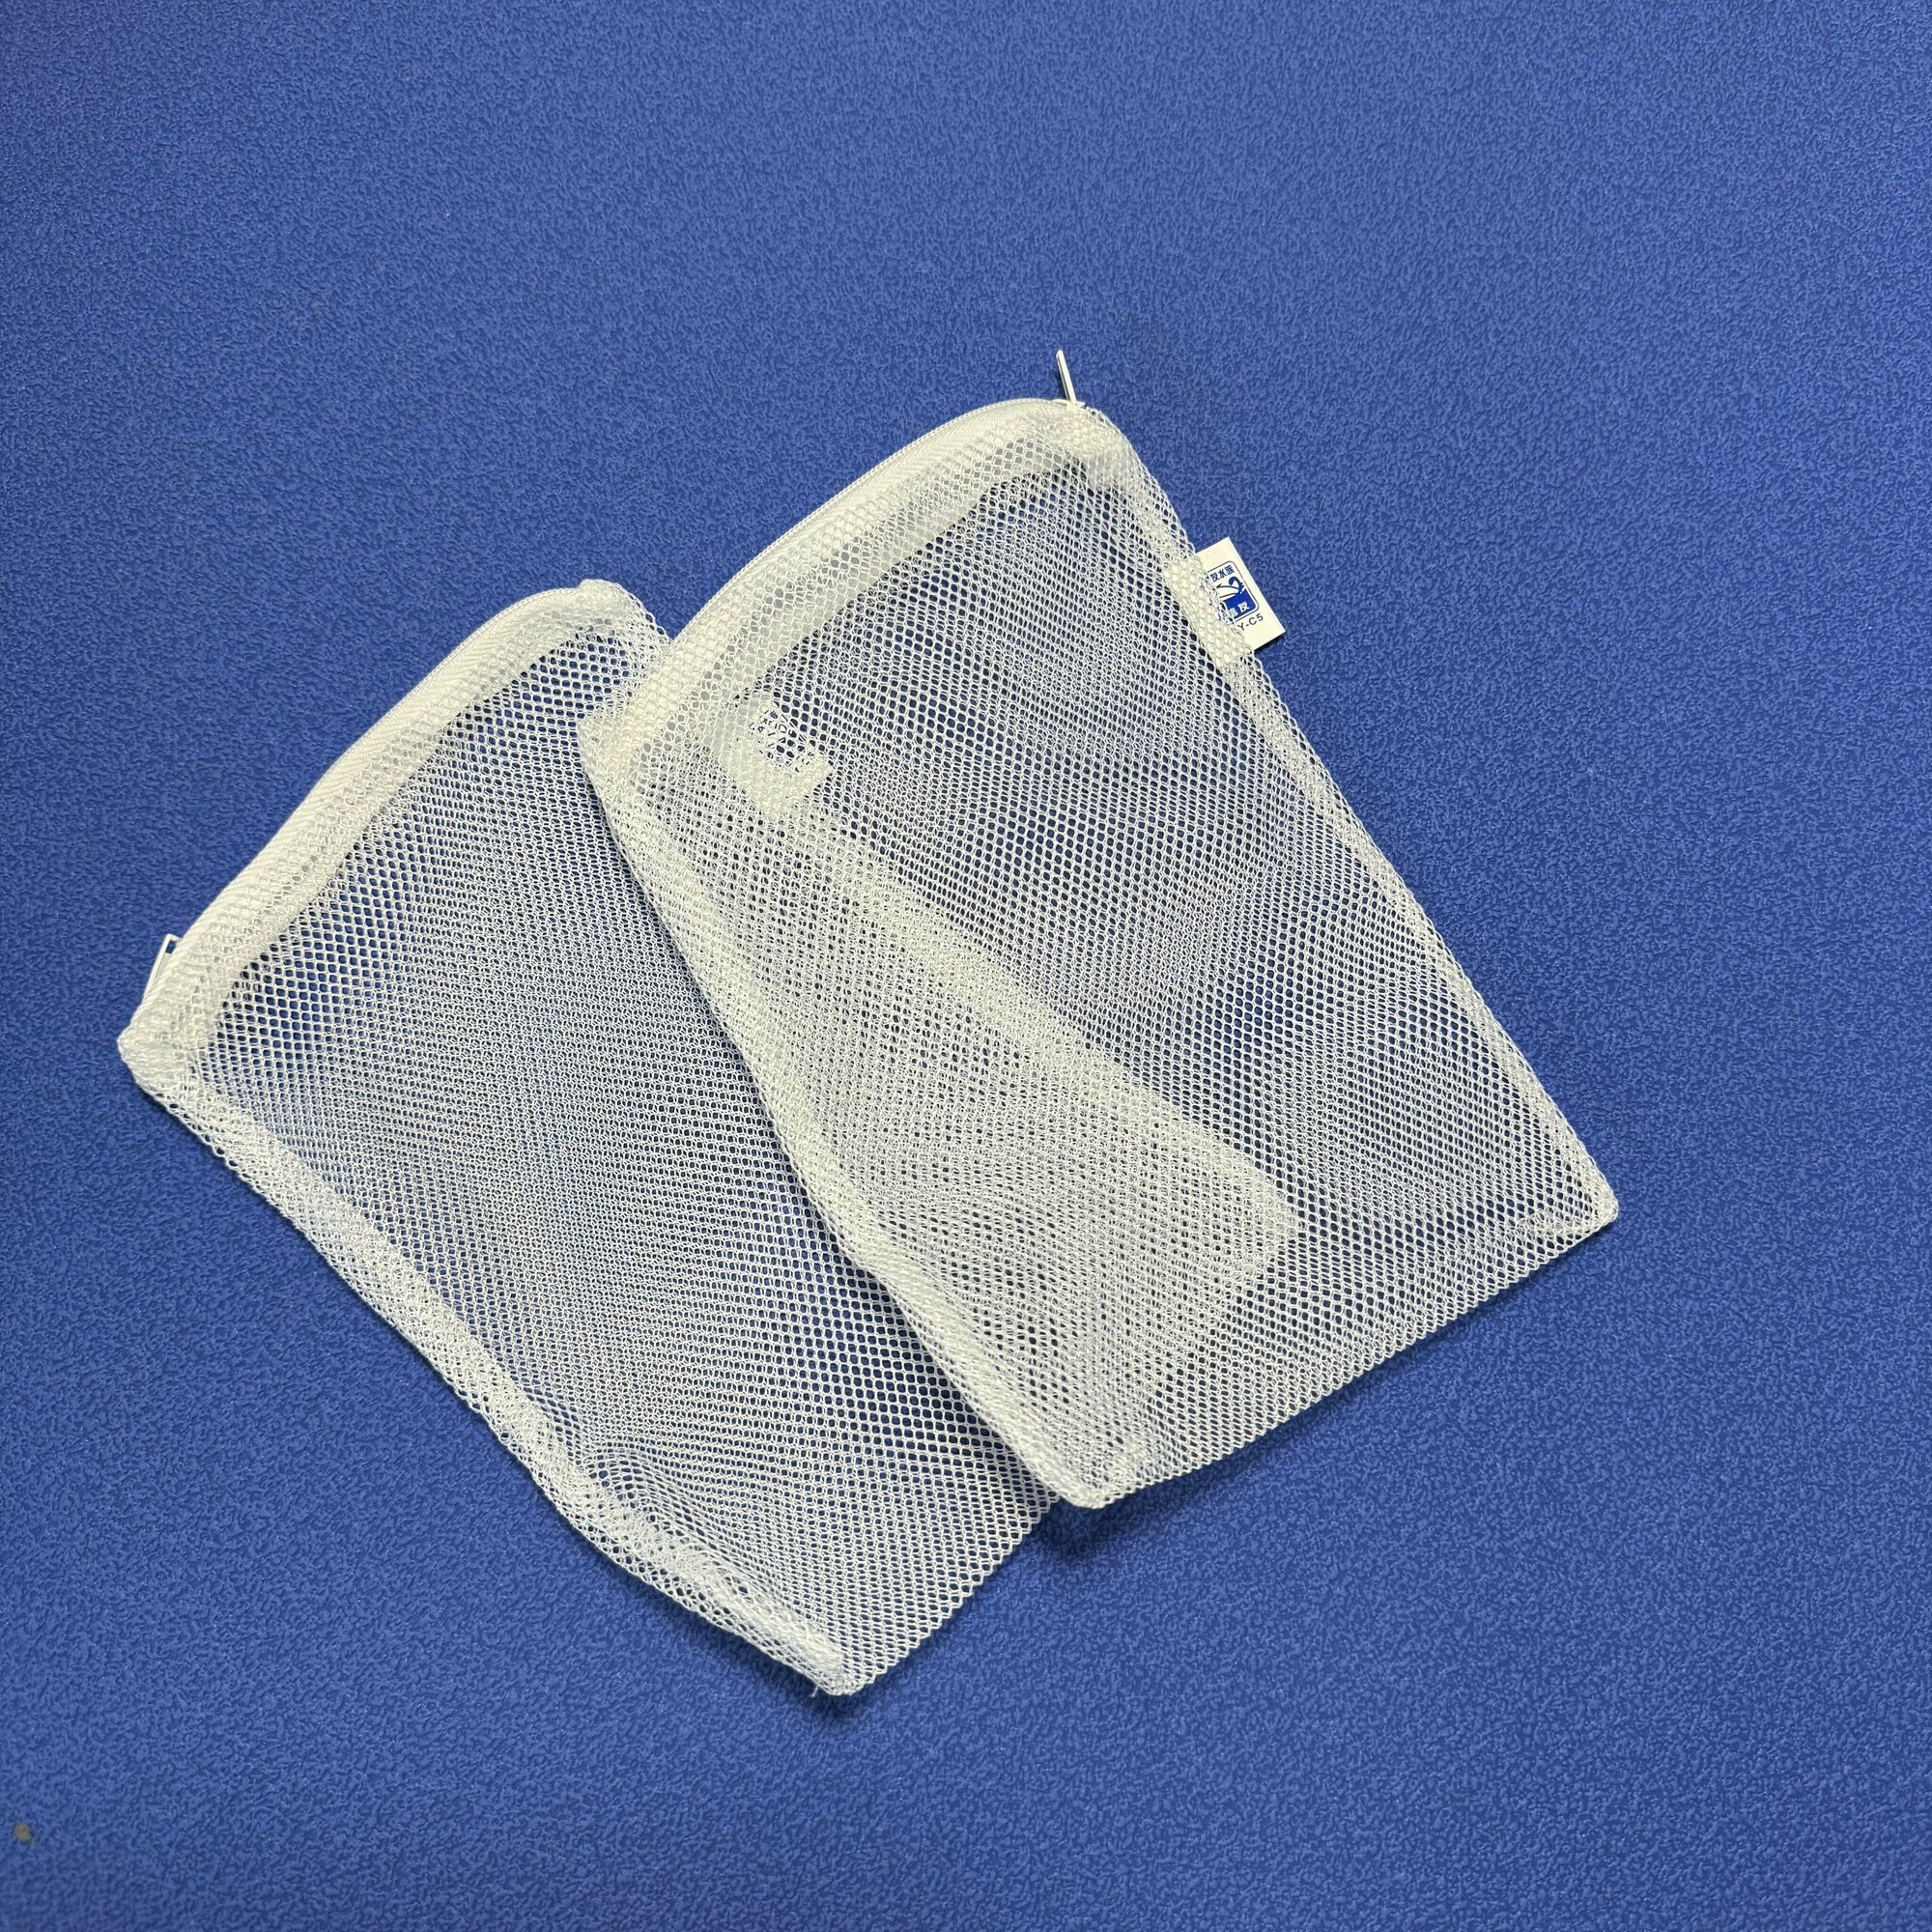 Сетчатые мешки 2шт размер 15см х 20 см. на молнии для сыпучих наполнителей аквариумного фильтра